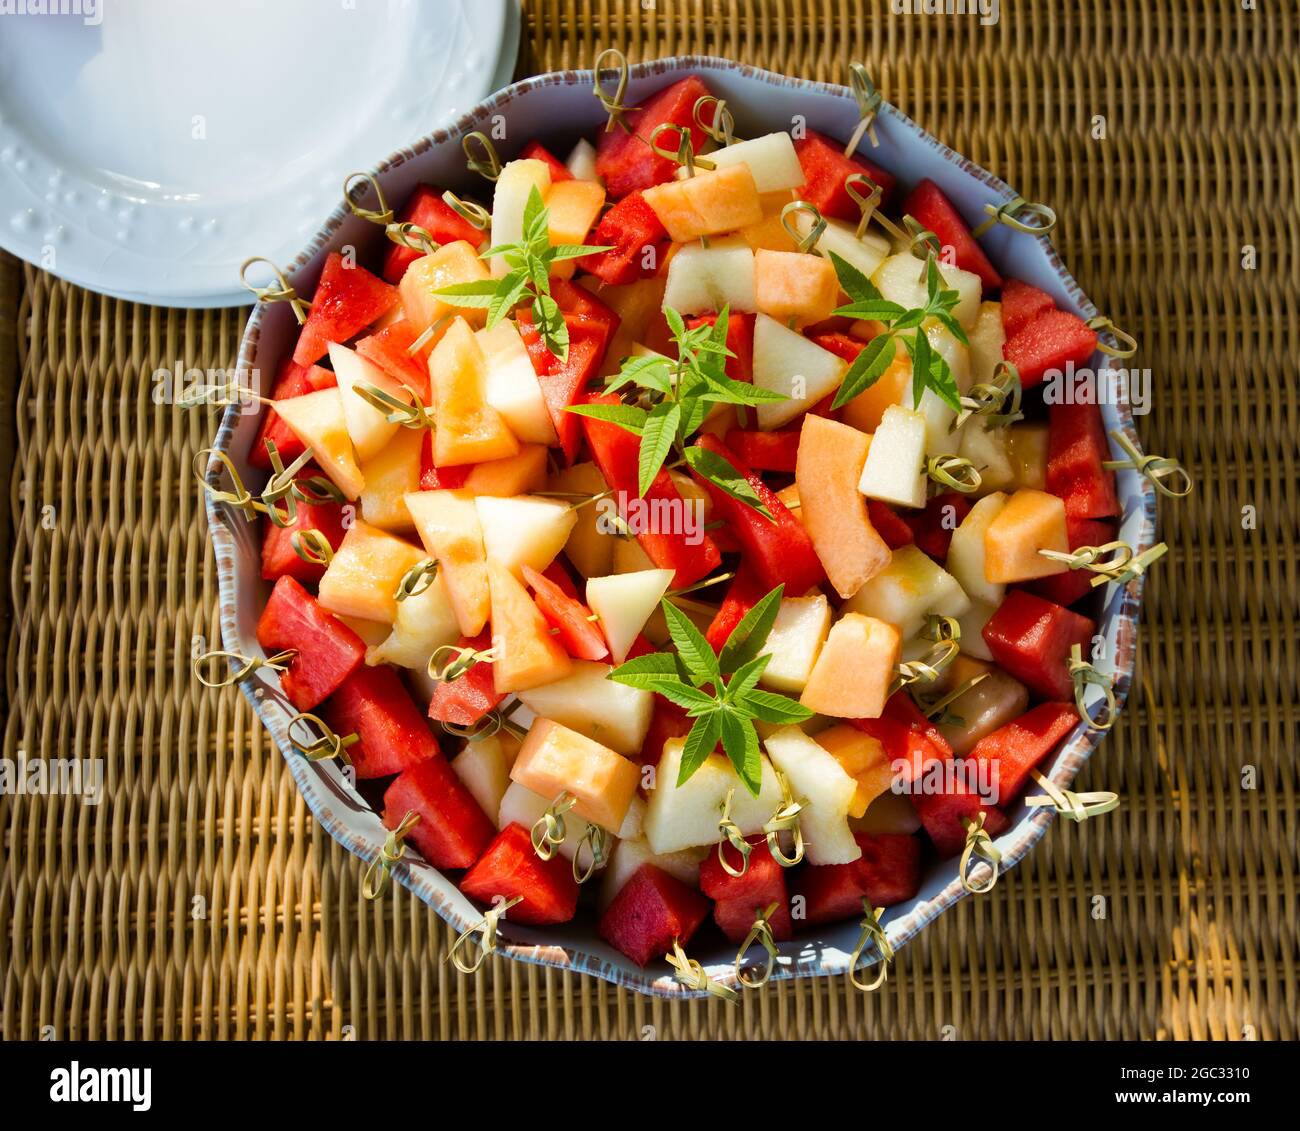 Große Schüssel mit frisch geschnittenem Obst, Melone, Wassermelone, auf Bambusstäbchen. Stockfoto